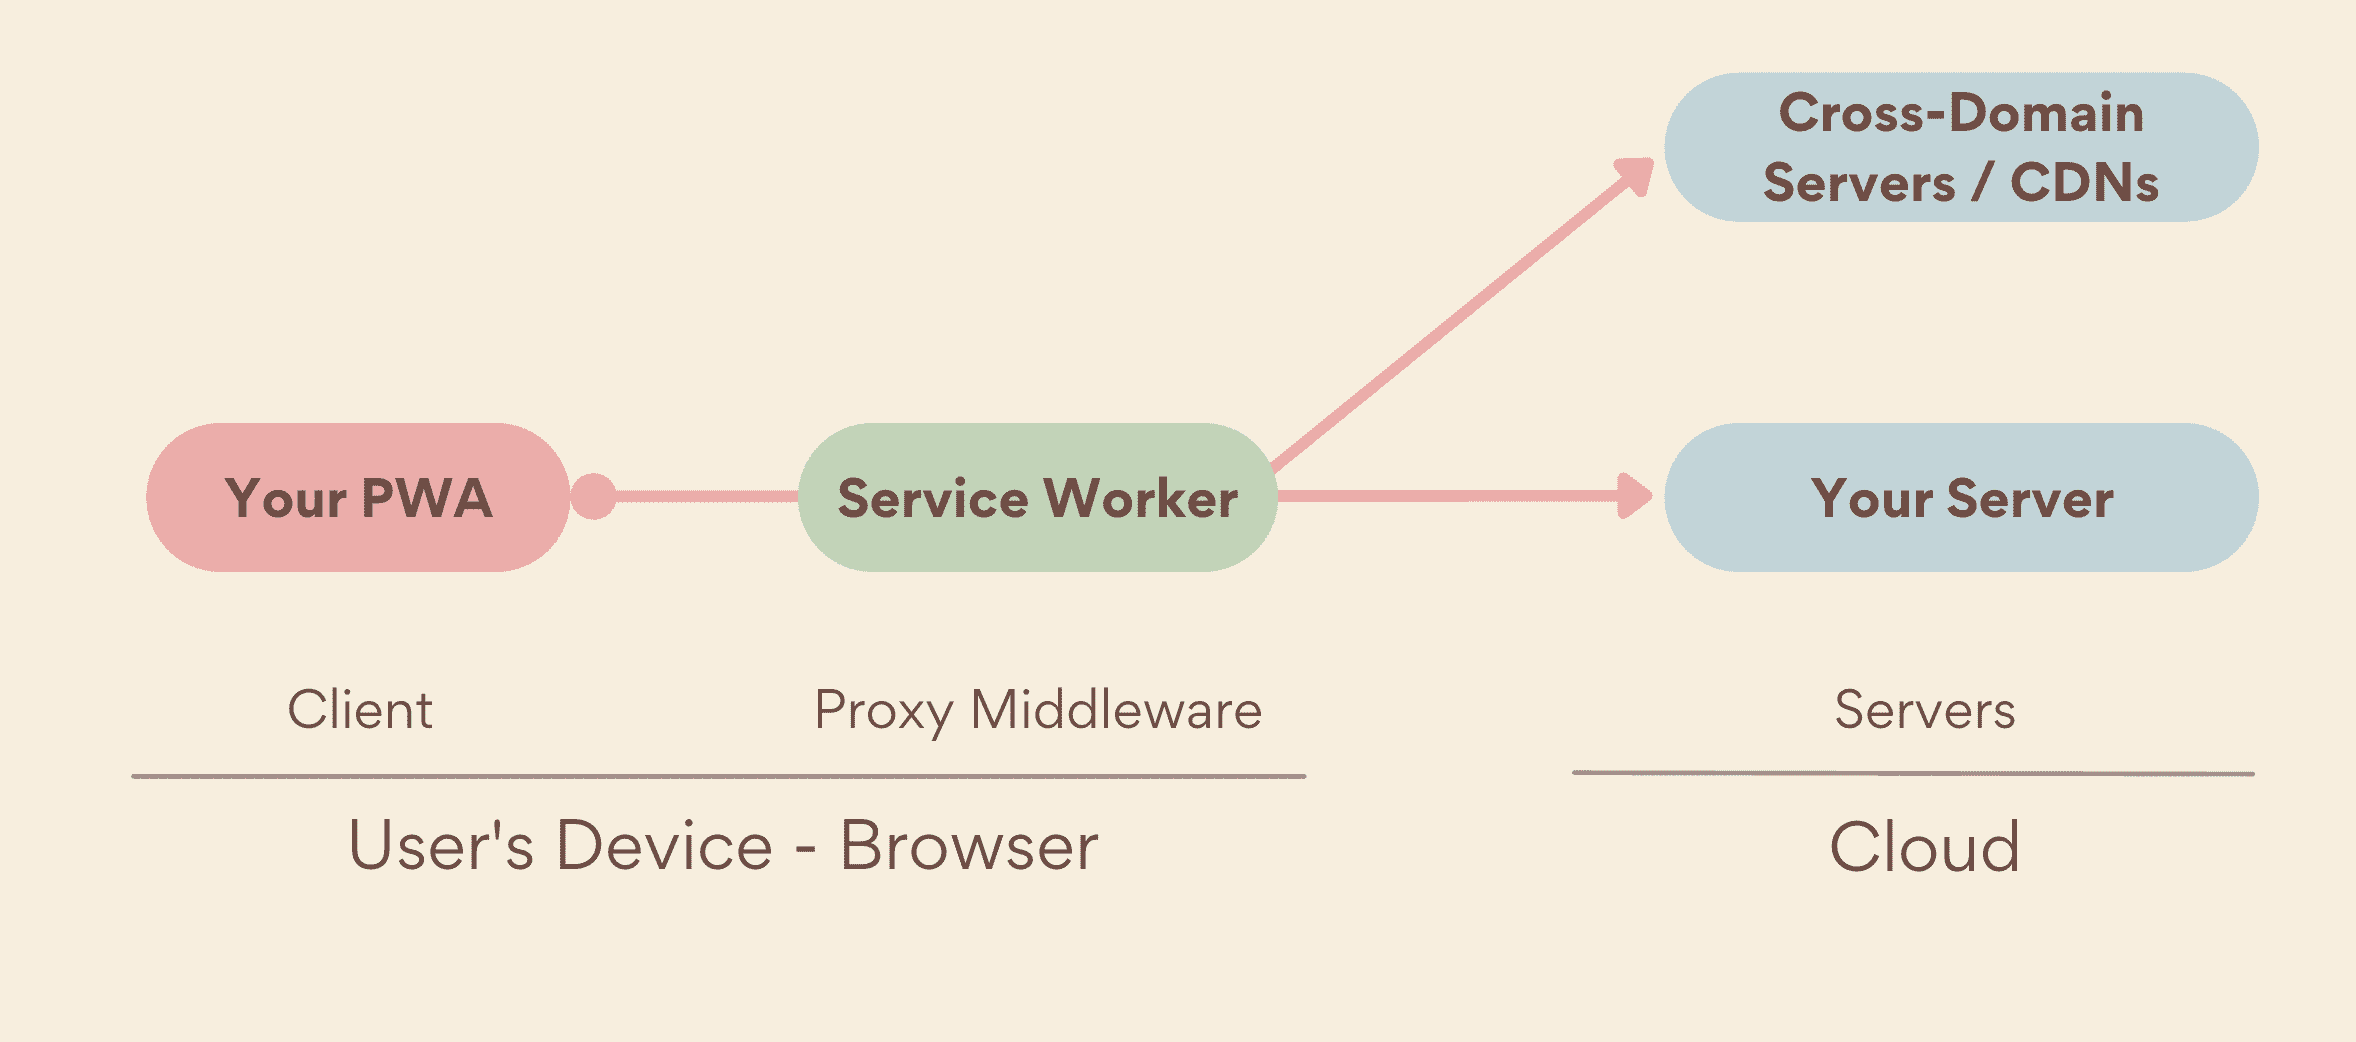 Service Worker 作为中间件代理，在 PWA 与服务器（包括您自己的服务器和跨网域服务器）之间在设备端运行。